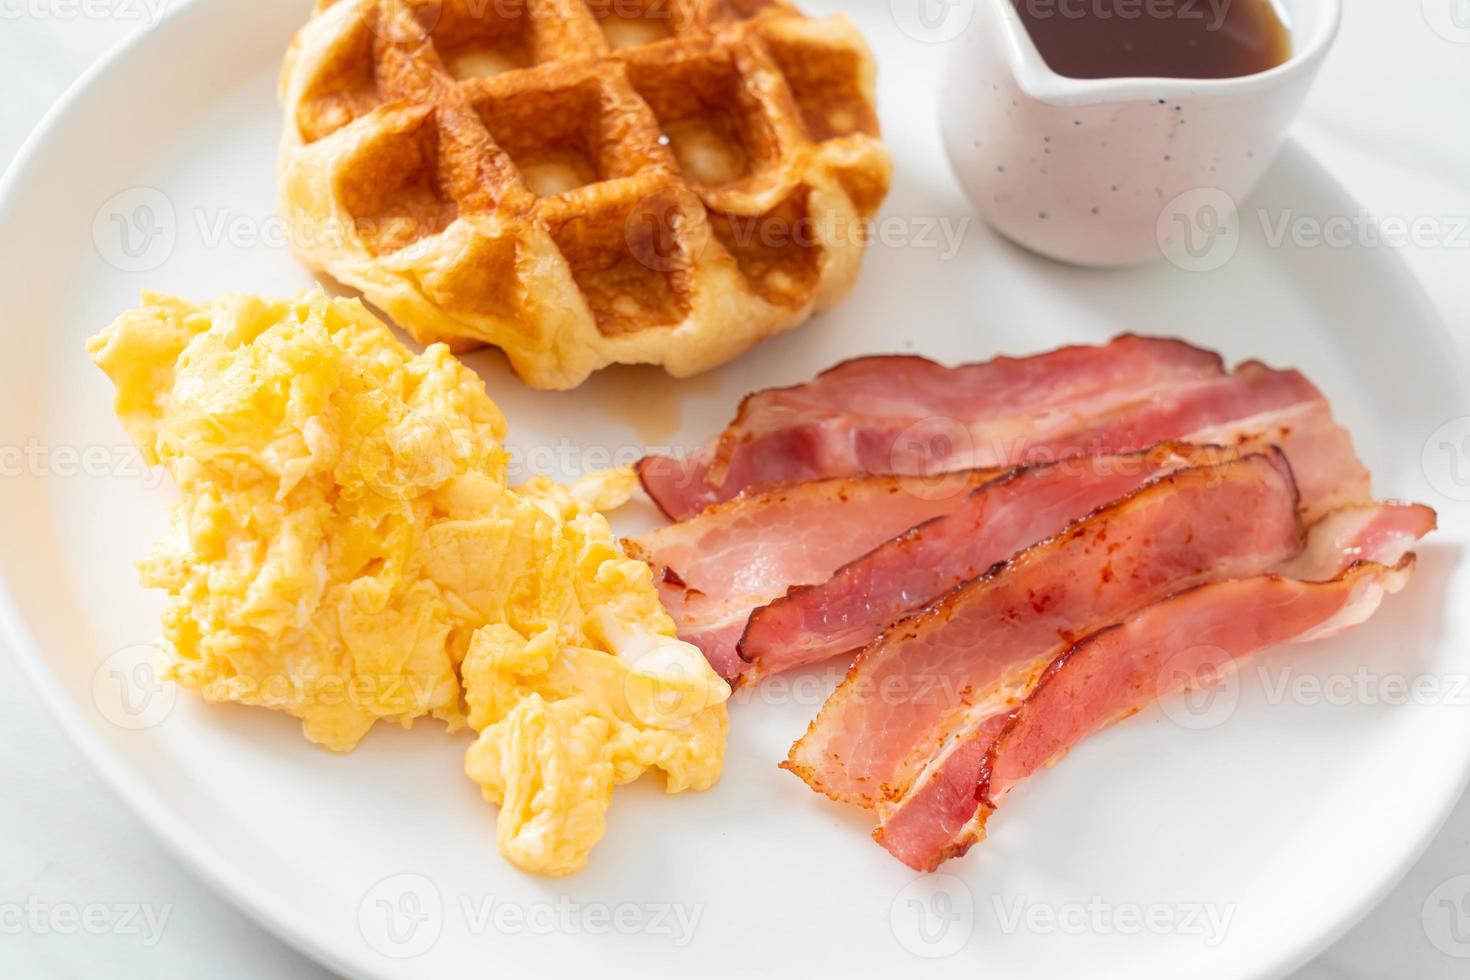 ovo mexido com bacon e waffle no café da manhã foto